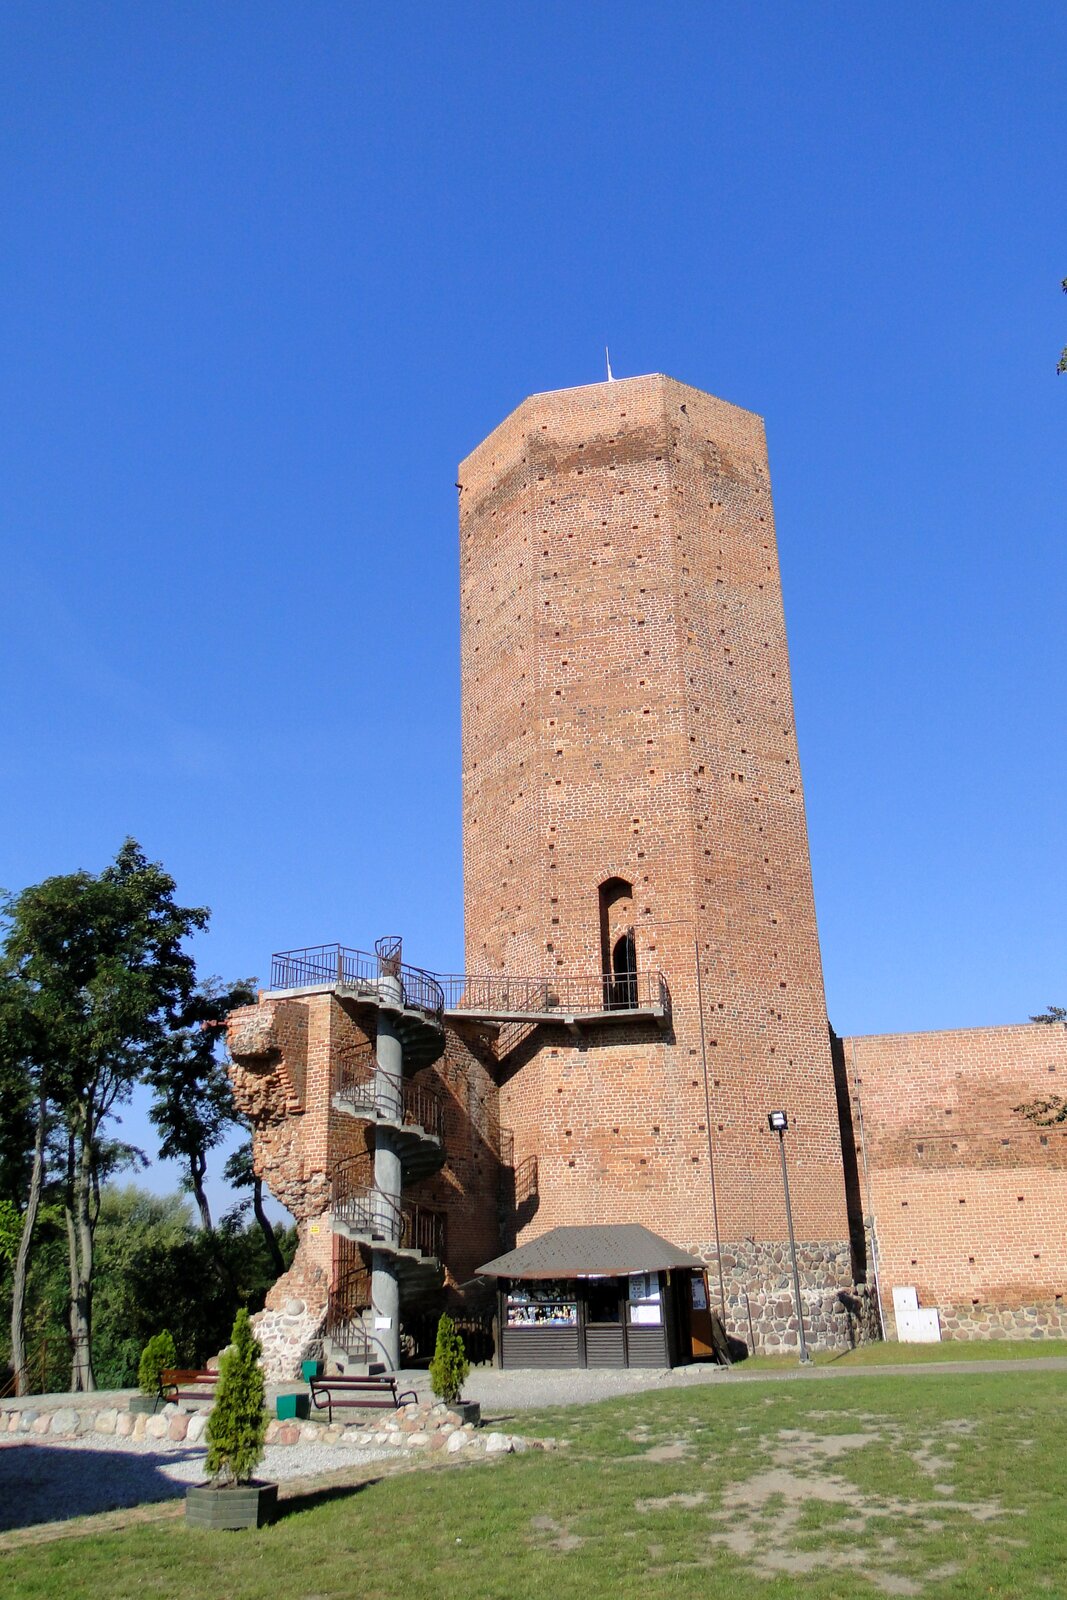 Mysia Wieża w Kruszwicy Mysia Wieża w Kruszwicy Źródło: Jędrycha, Wikimedia Commons, licencja: CC BY-SA 3.0.